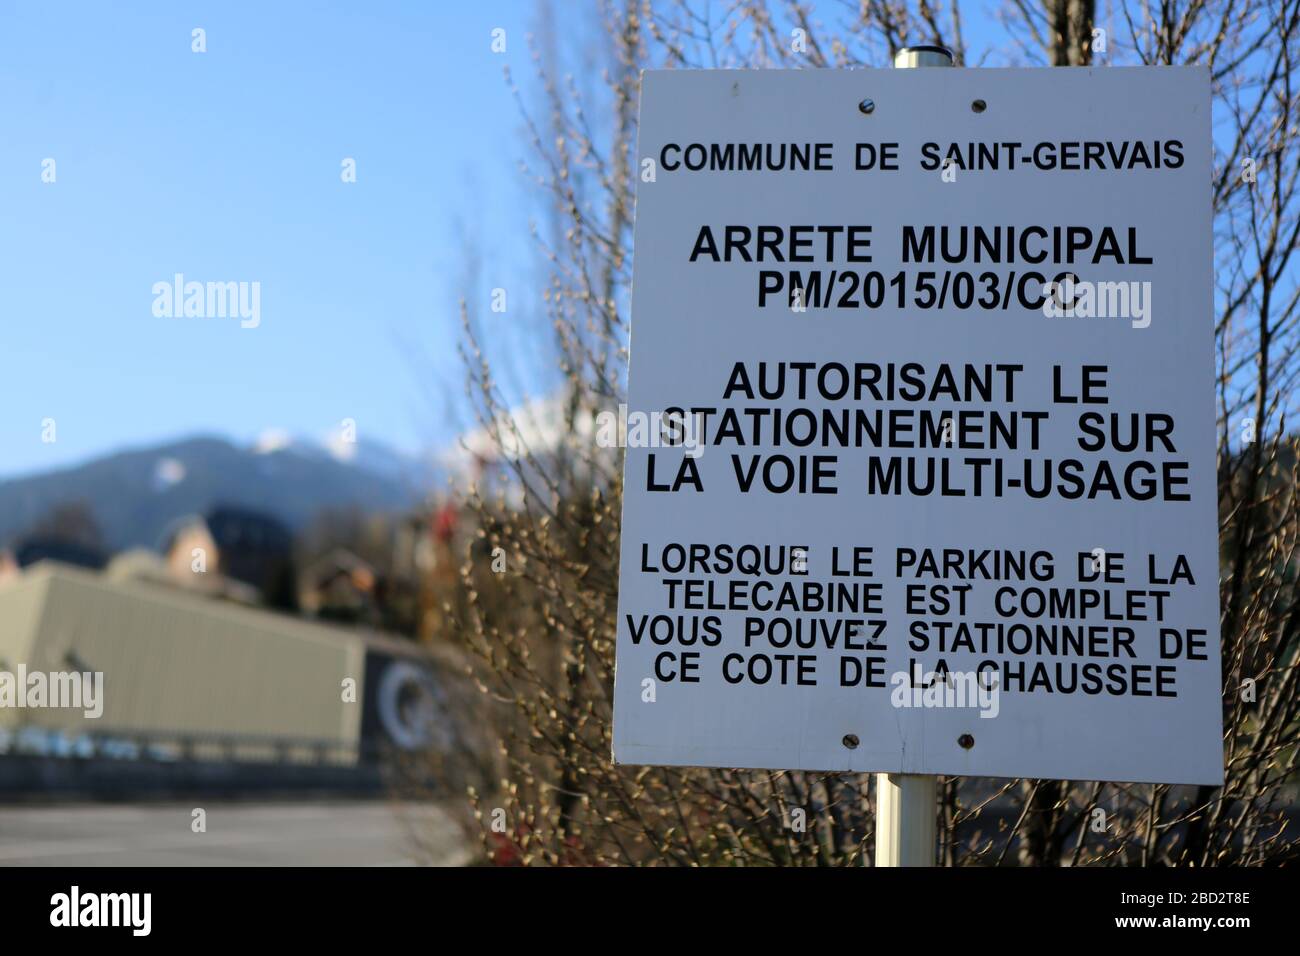 Arrêté municipal autorisant le stationnement sur la voie multi-usage. Alpes françaises. Saint-Gervais-les-Bains. Haute-Savoie. France. Stock Photo